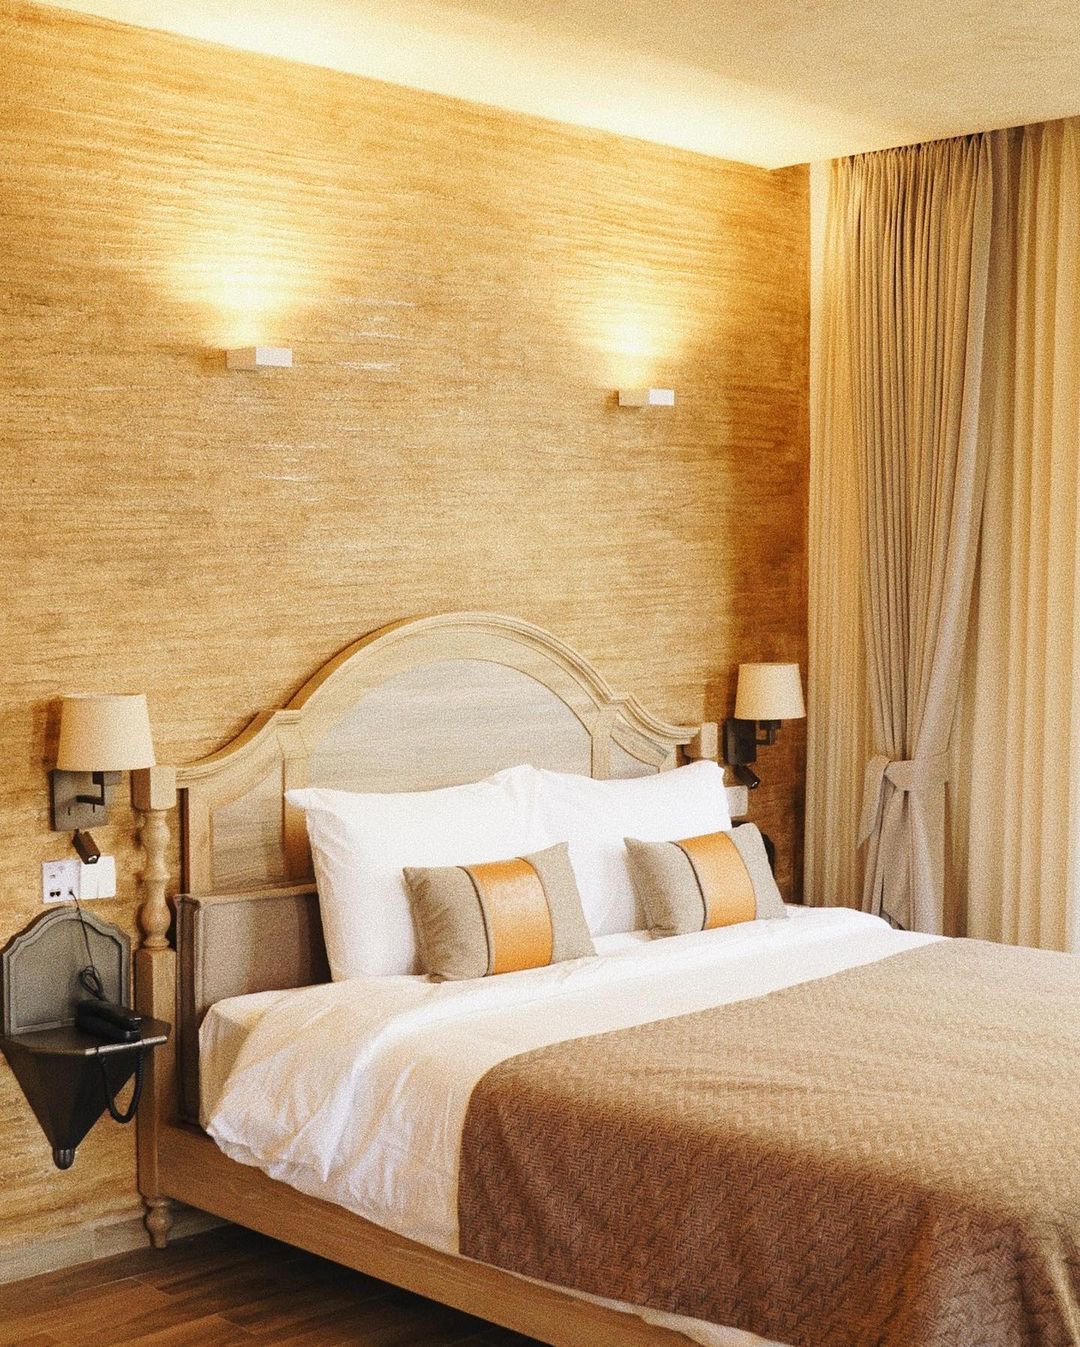 3 boutique hotel ở Đà Lạt có giá từ 800.000 đồng đến 2 triệu/đêm - 1